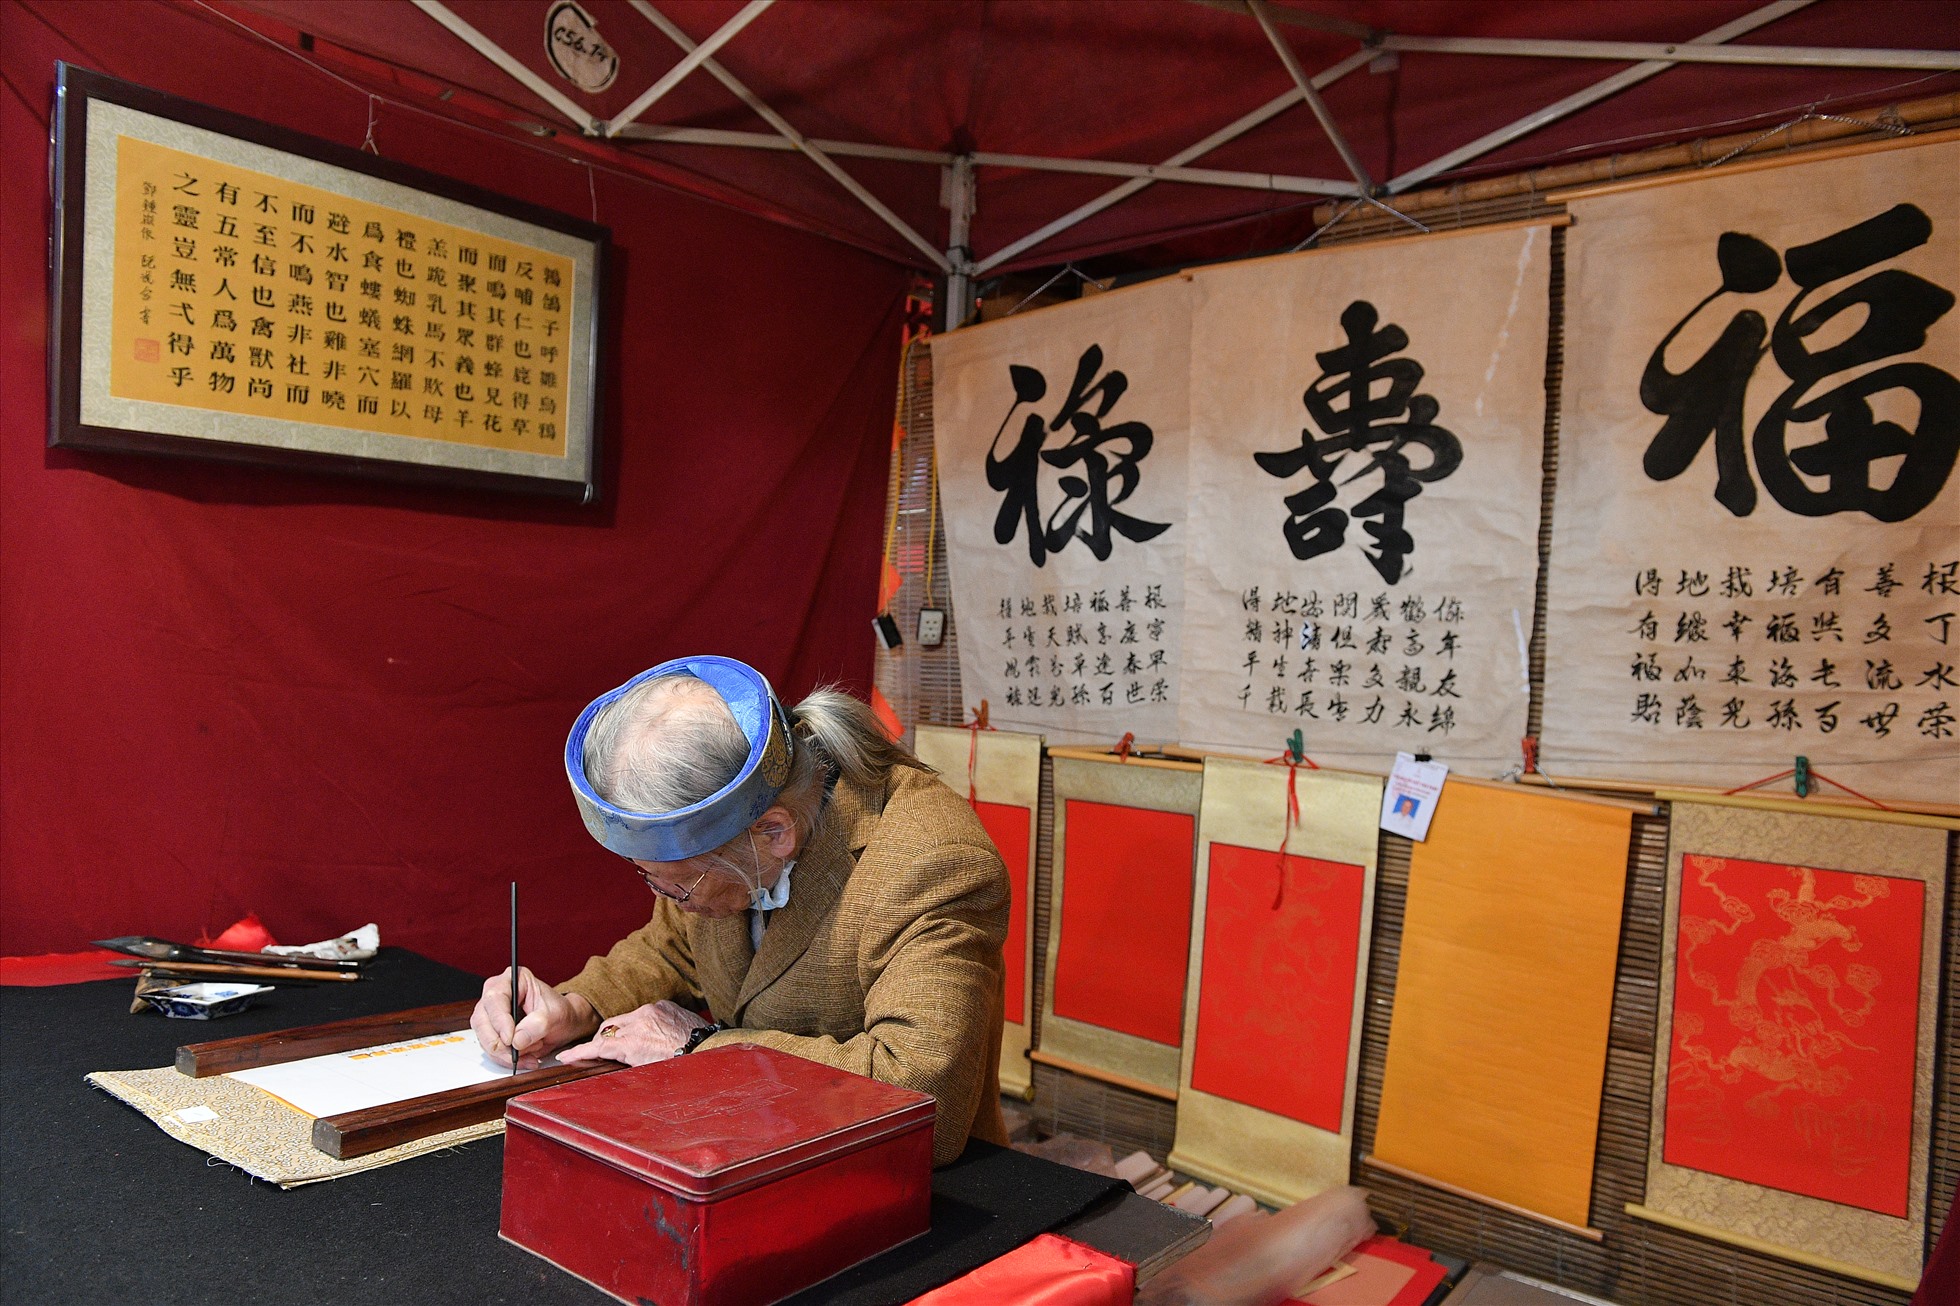 Nghệ nhân Nguyễn Vũ Hợp năm nay 78 tuổi bút danh Lạc Đạo, cũng có trên 20 năm cầm bút.